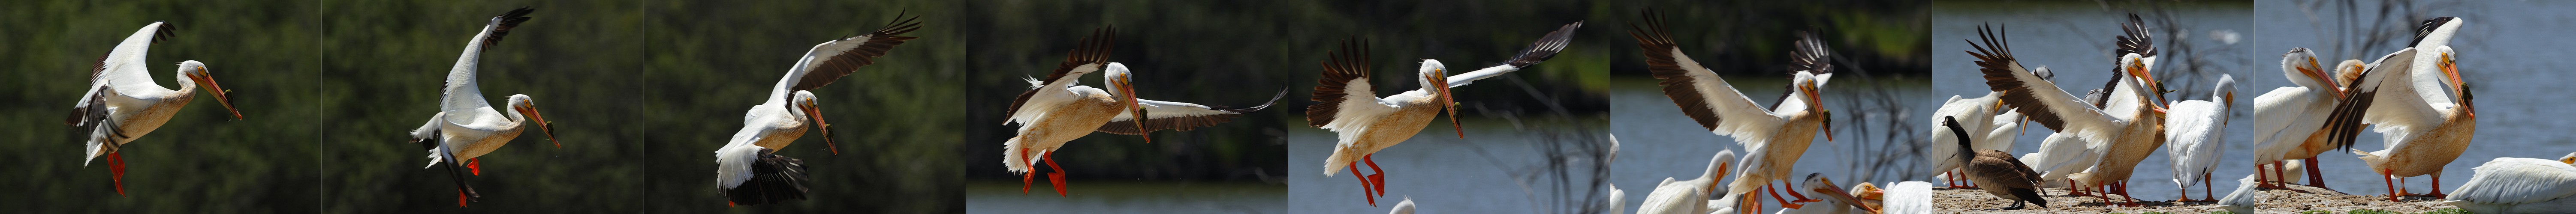 Pelican Landing Sequence